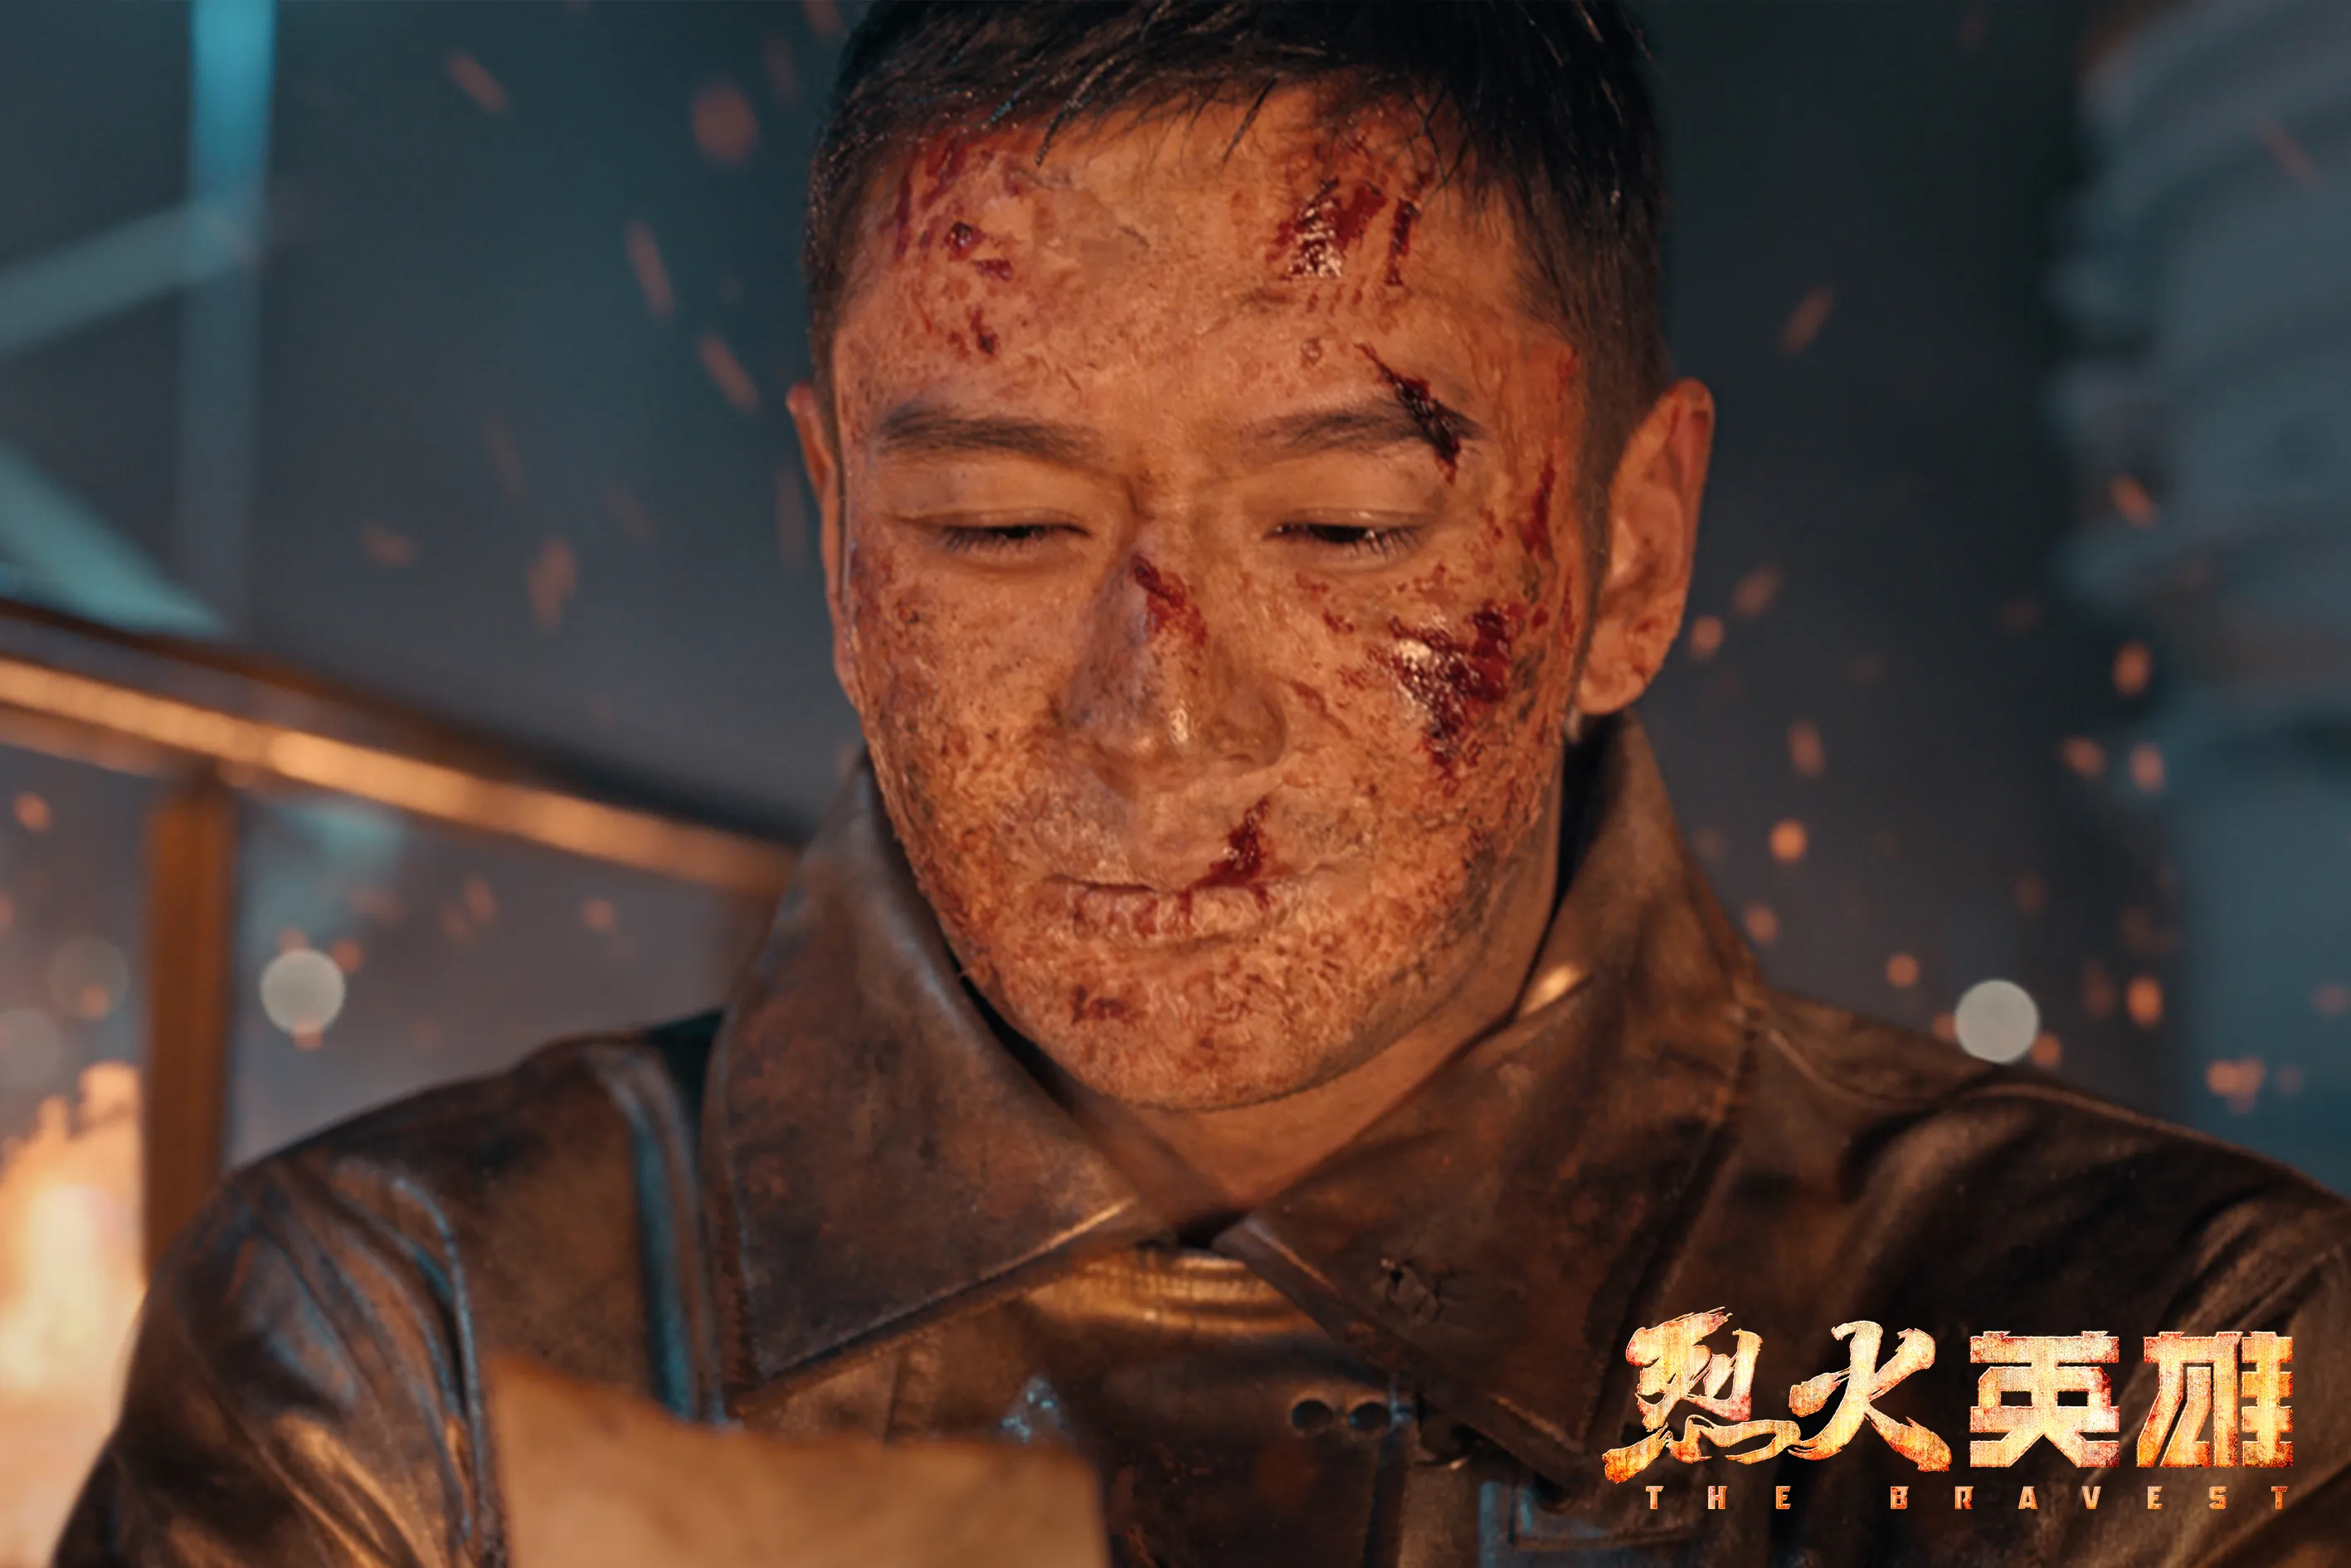  Xiaoming Huang 为了最大程度还原角色特意增肥还在电影中“毁容”.jpg